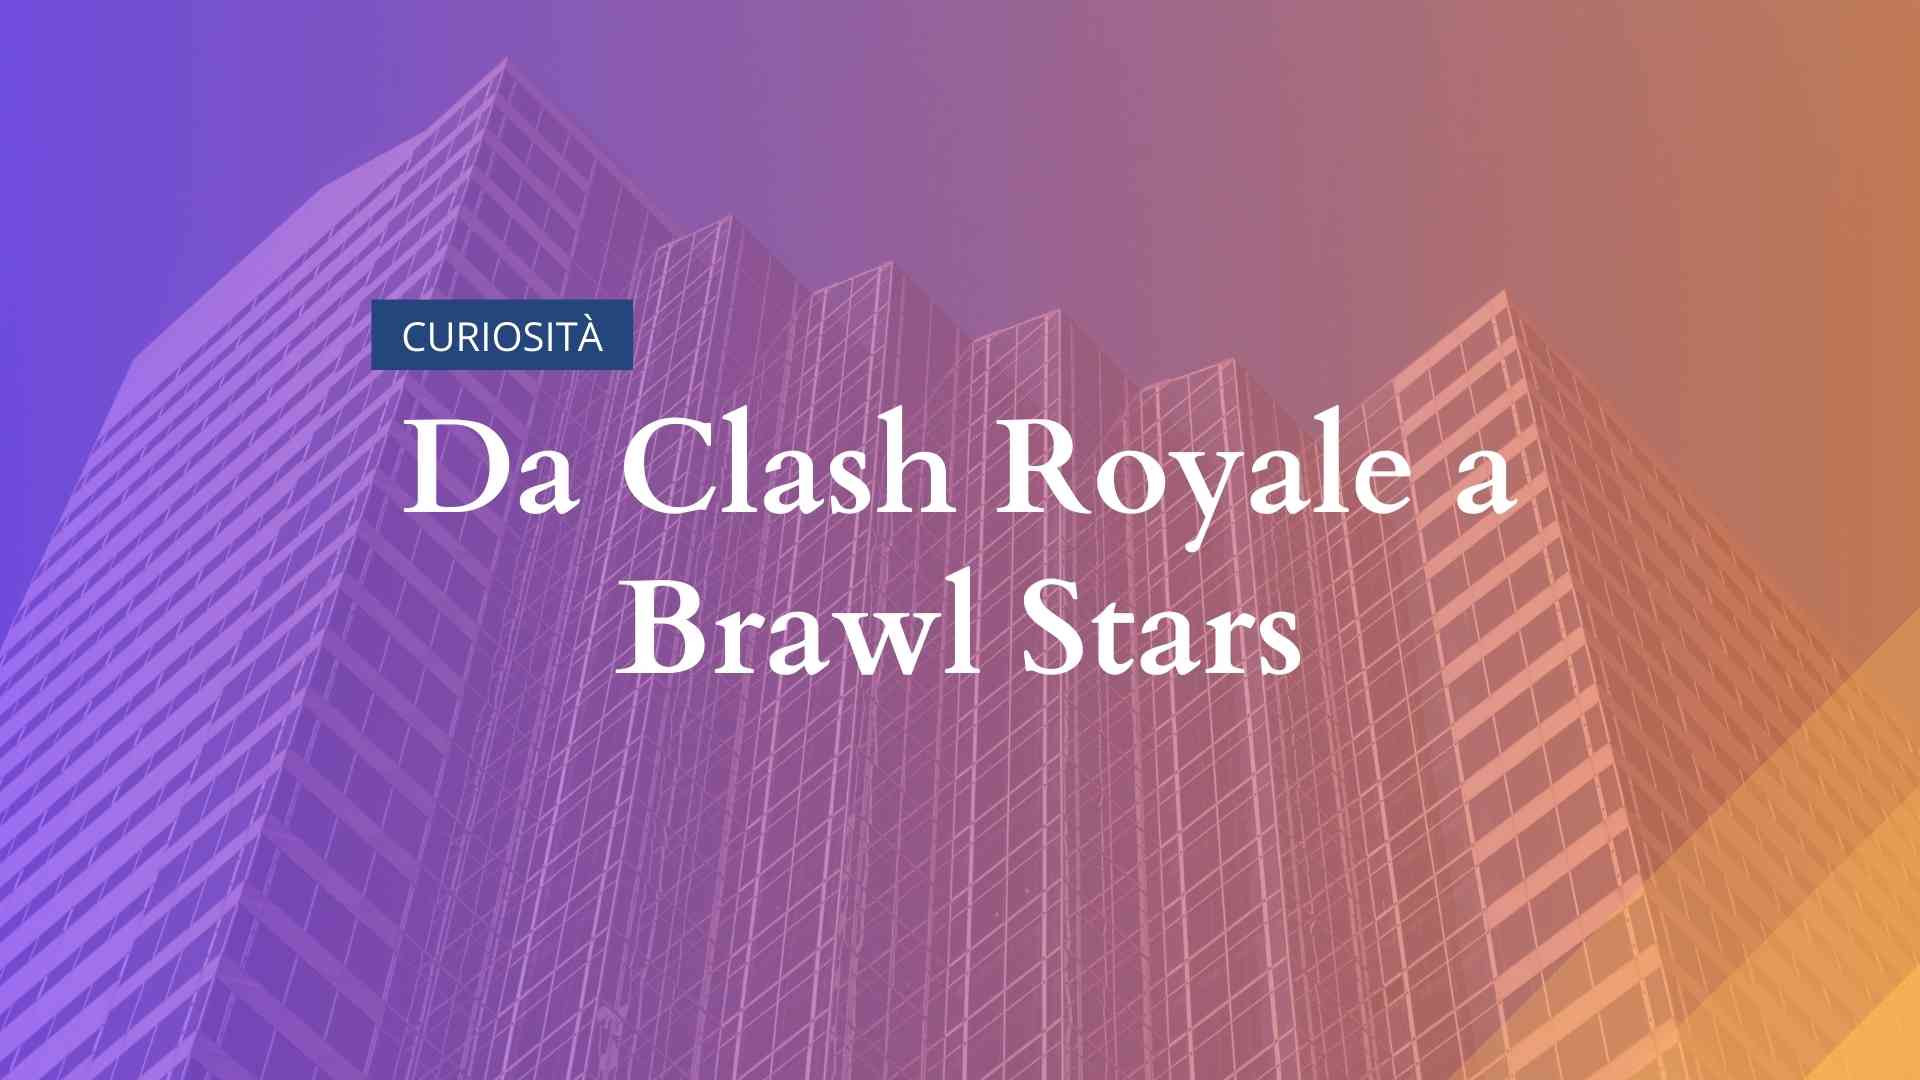 Da Clash Royale a Brawl Stars